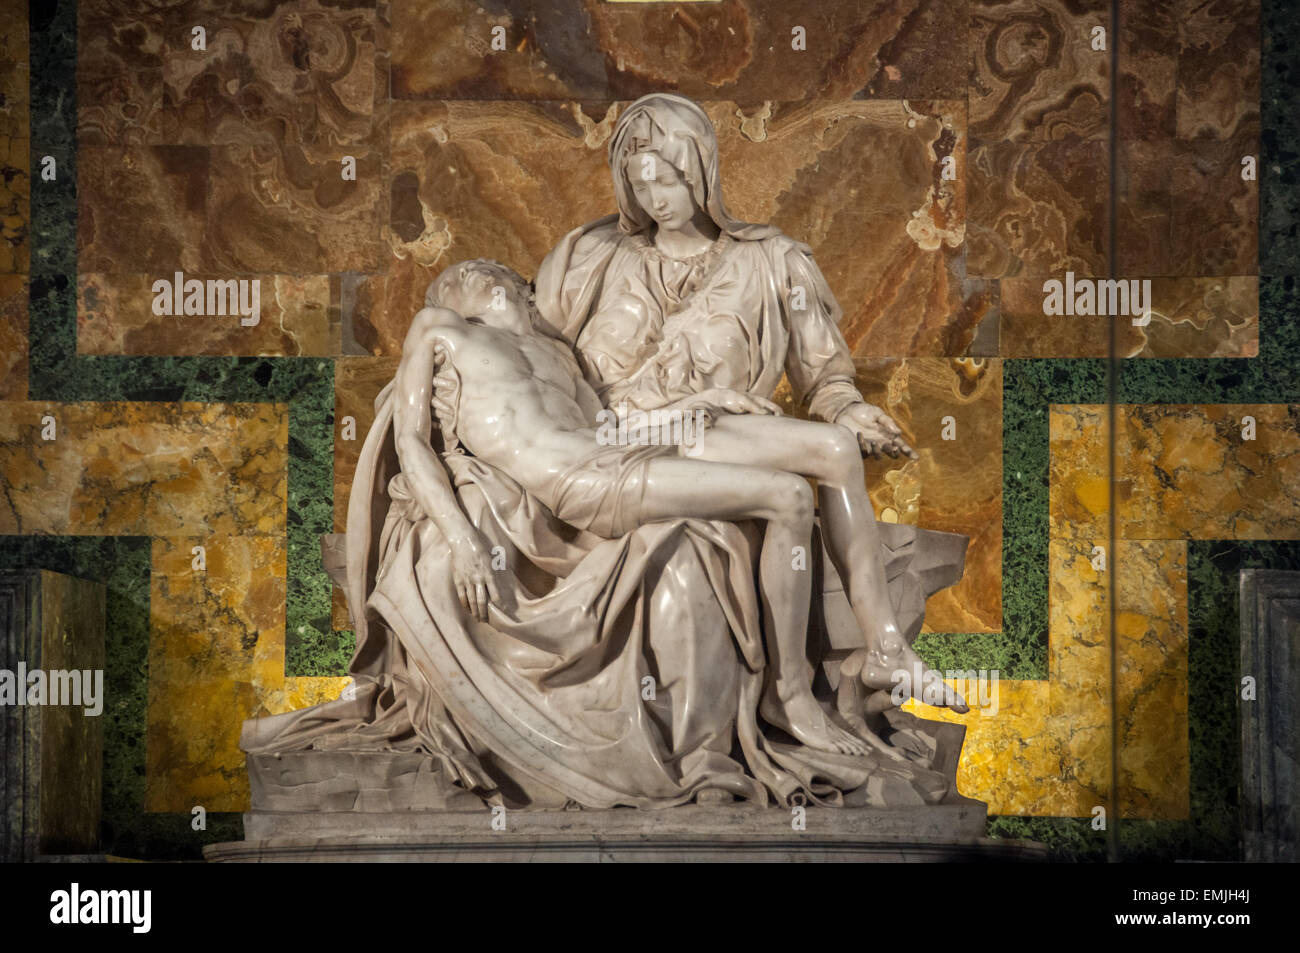 Pietà statua della Vergine Maria che cullano il corpo morto di Gesù, la Basilica di San Pietro e Città del Vaticano Foto Stock